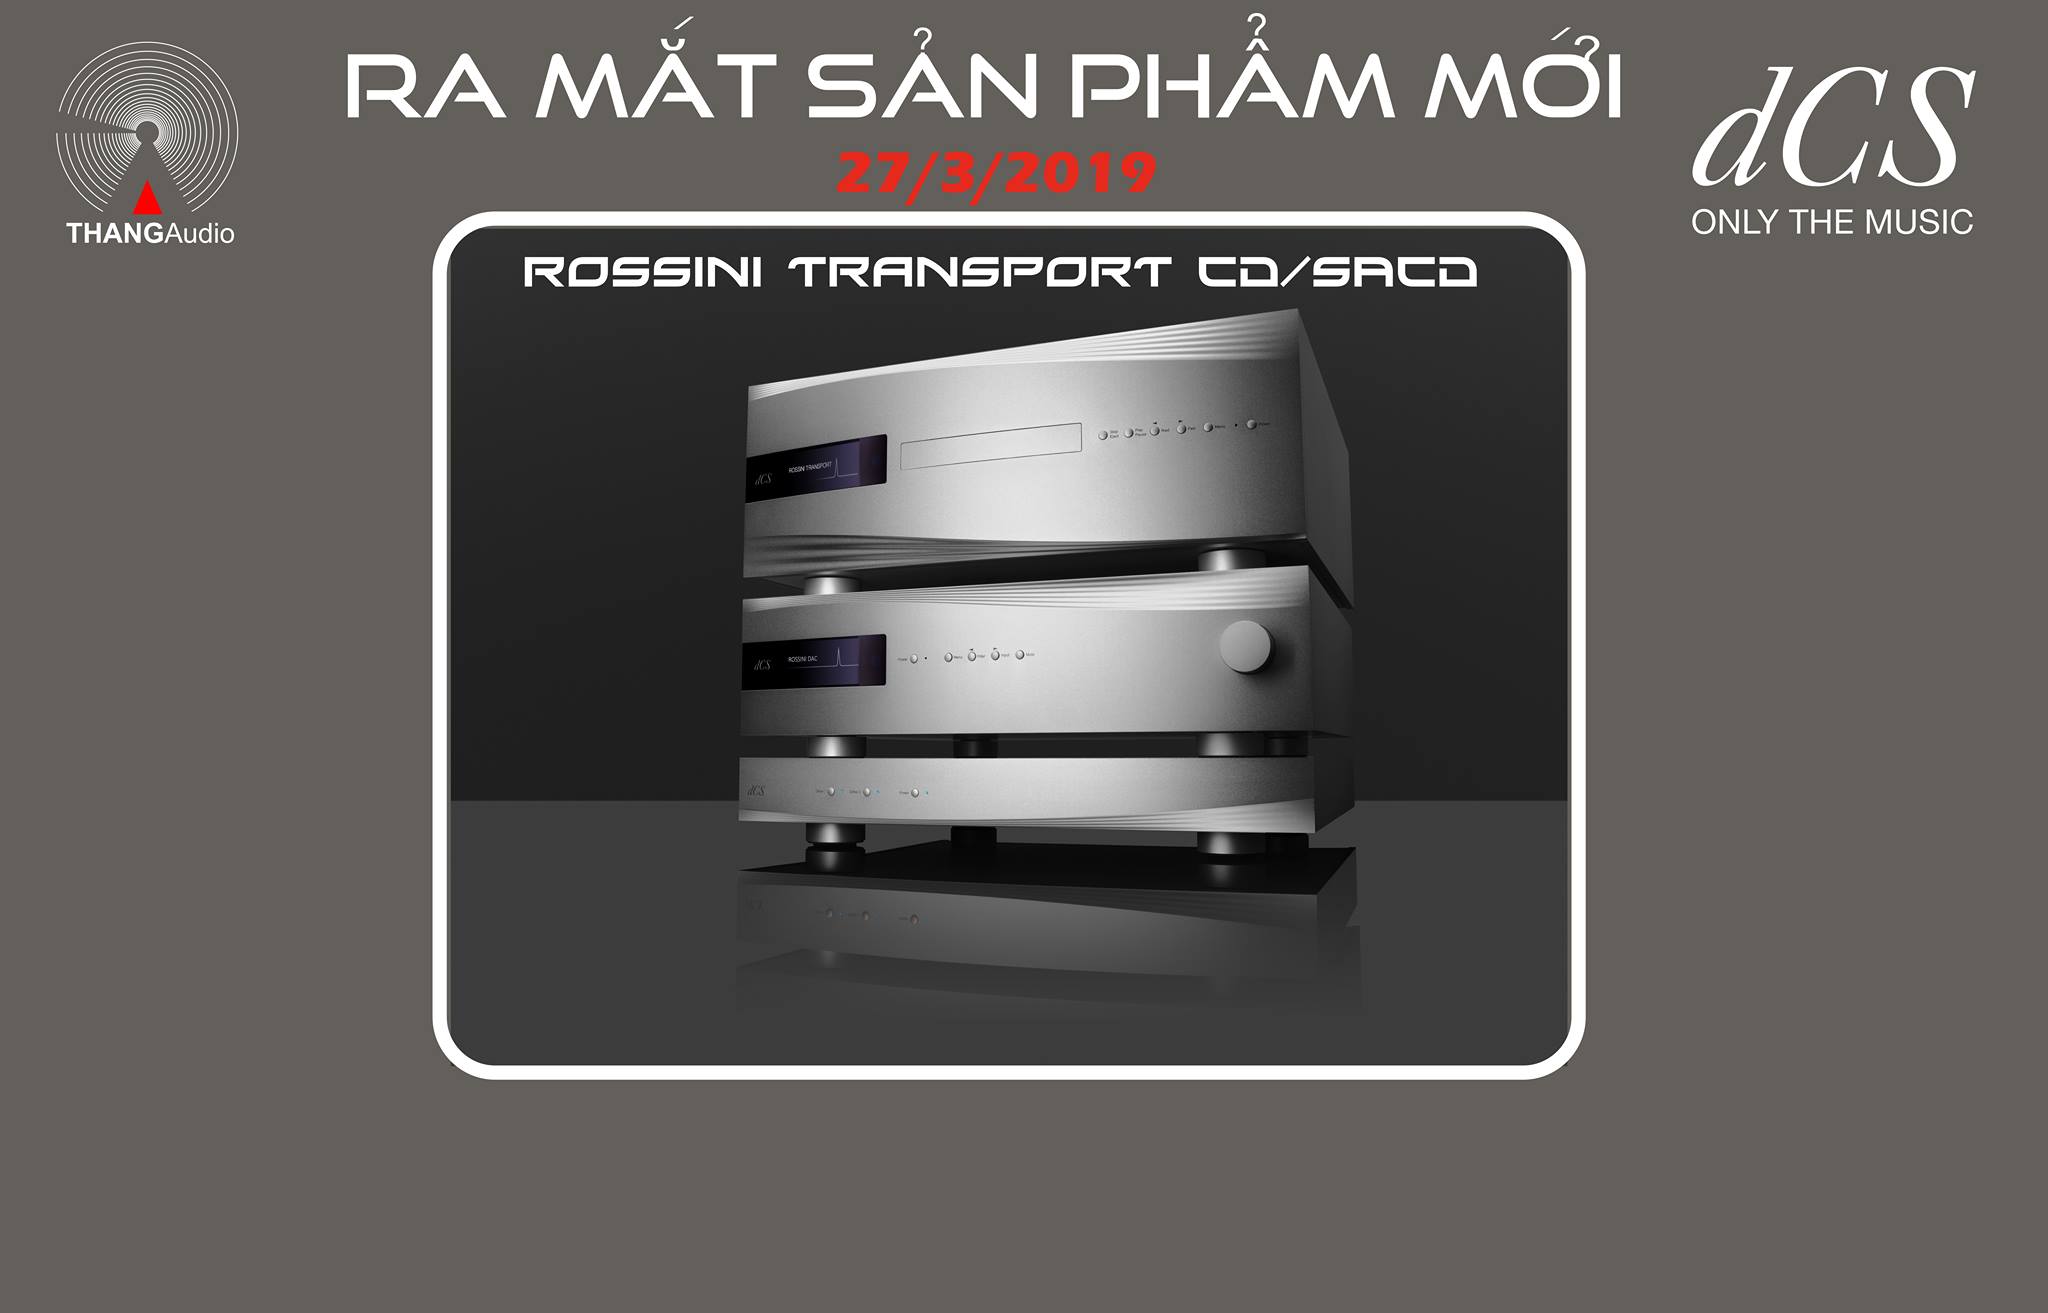 Thông cáo báo chí: RA MẮT SẢN PHẨM dCS Rossini CD/SACD Transport